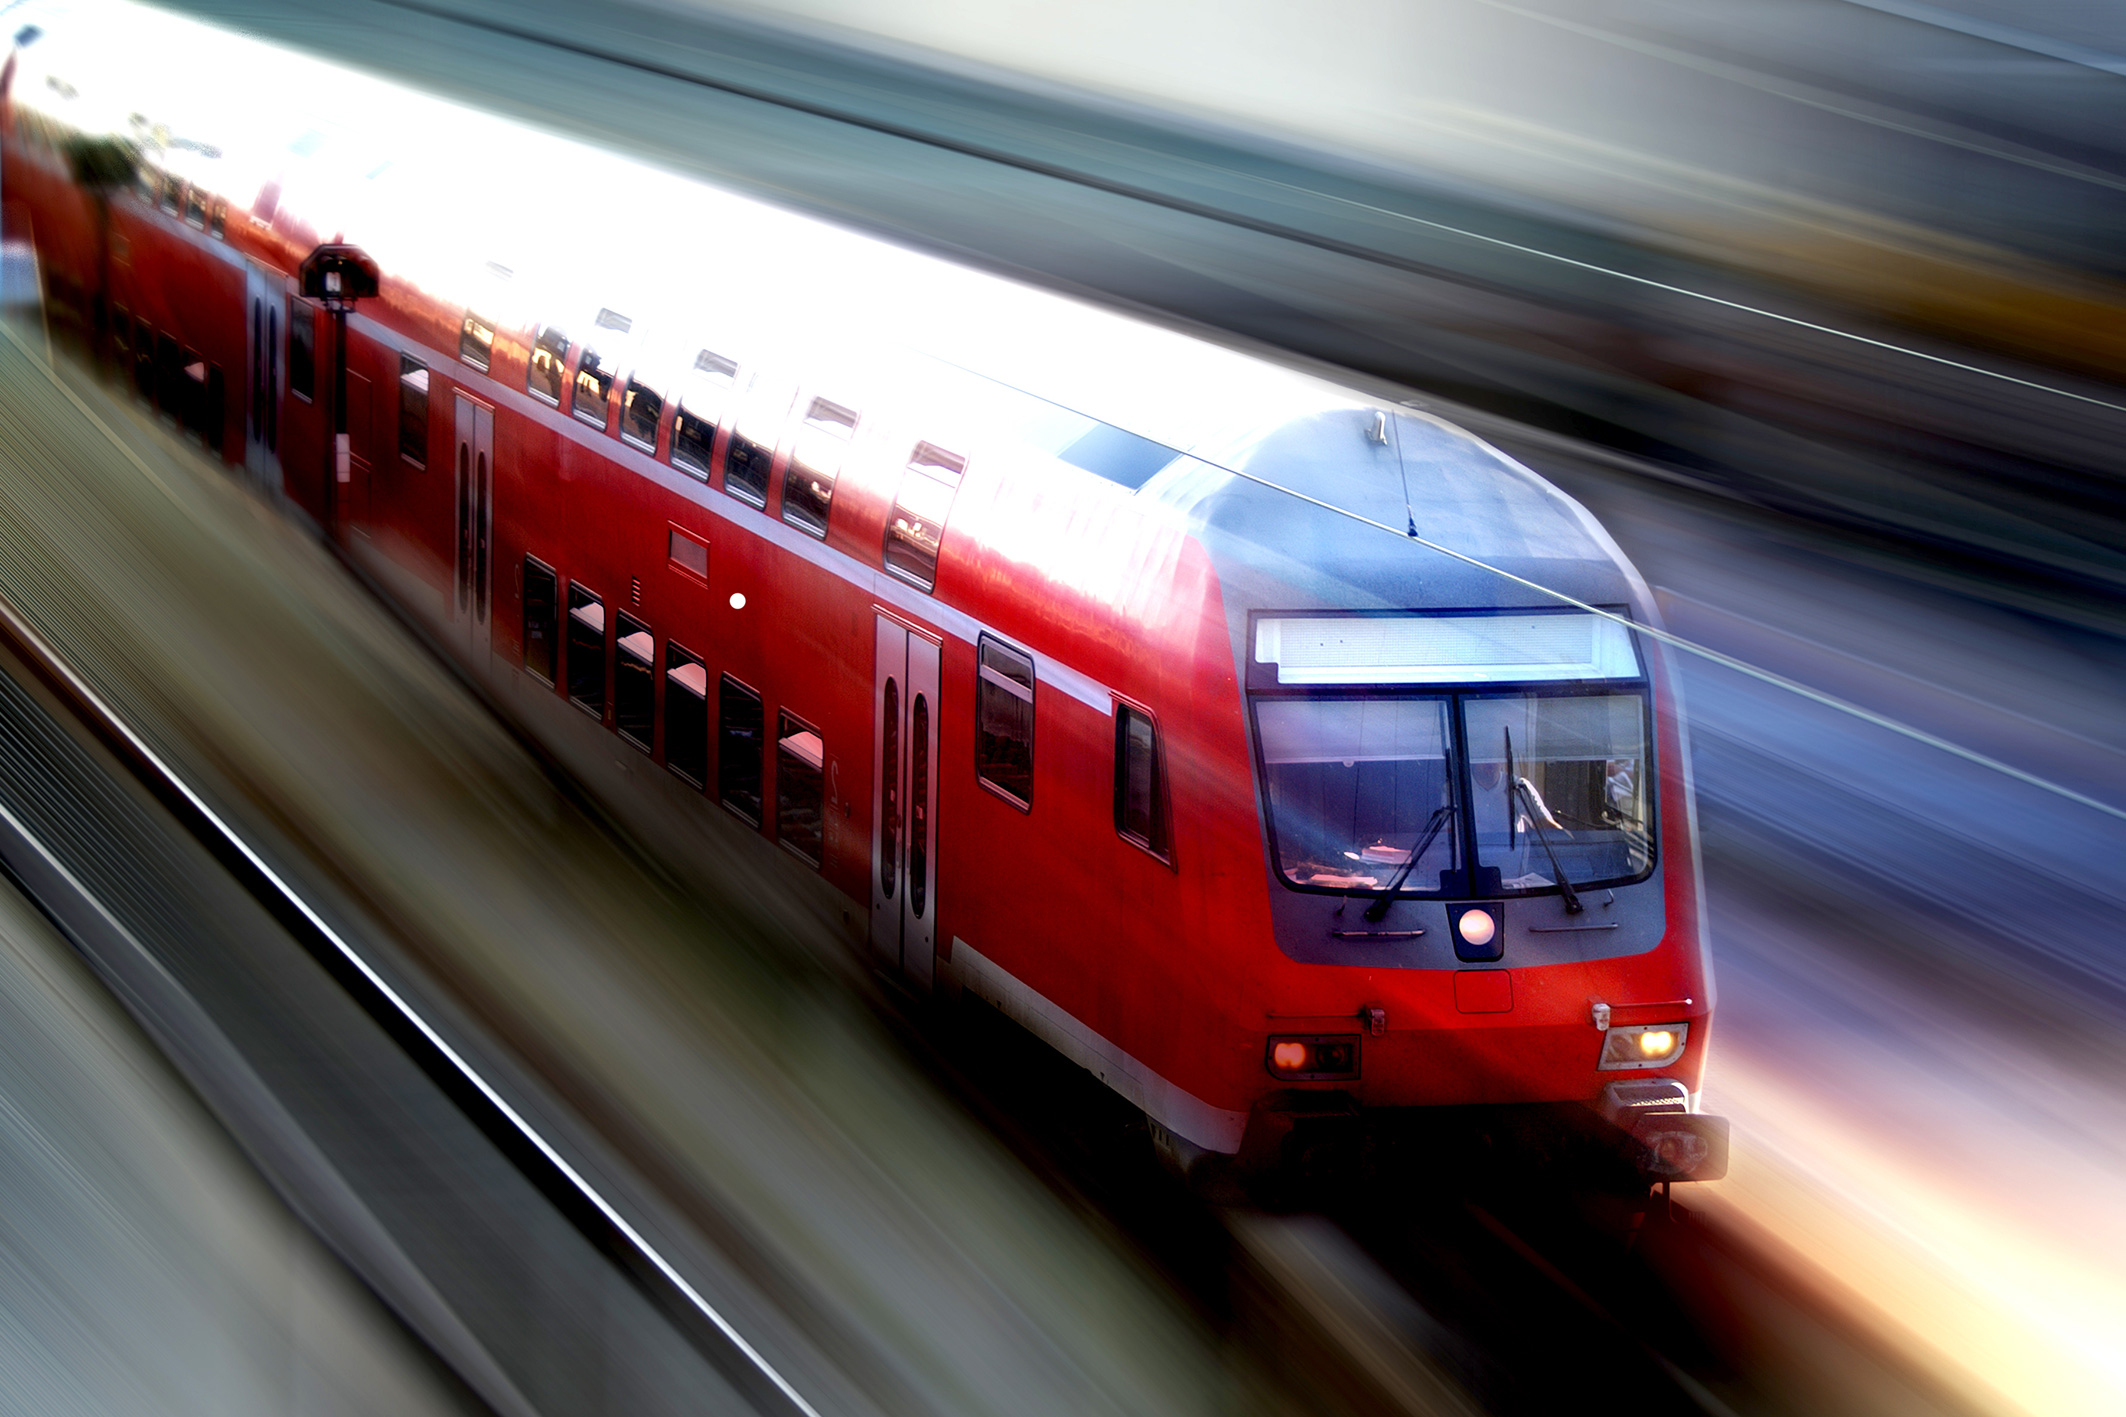 Wir sind Service Partner im Bahnbetrieb der Firmen: Deutsche Bahn GmbH und liefern unter anderem an: S-Bahn Berlin GmbH, S-Bahn Hamburg GmbH, Alstom NL. Wir beraten Sie gerne.